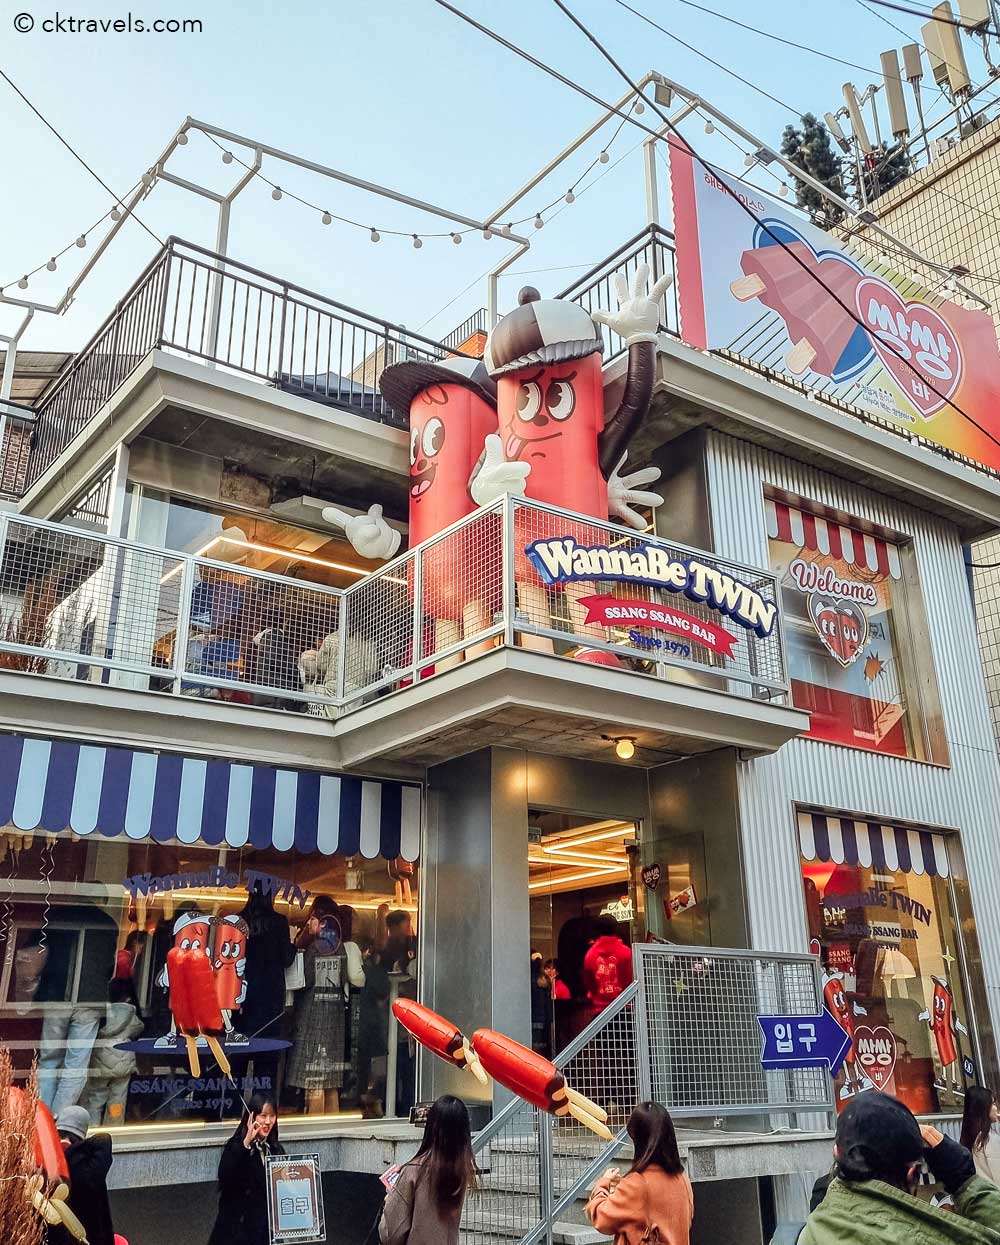 SSANG-SSANG Bar pop up Seongsu-dong Seoul Korea